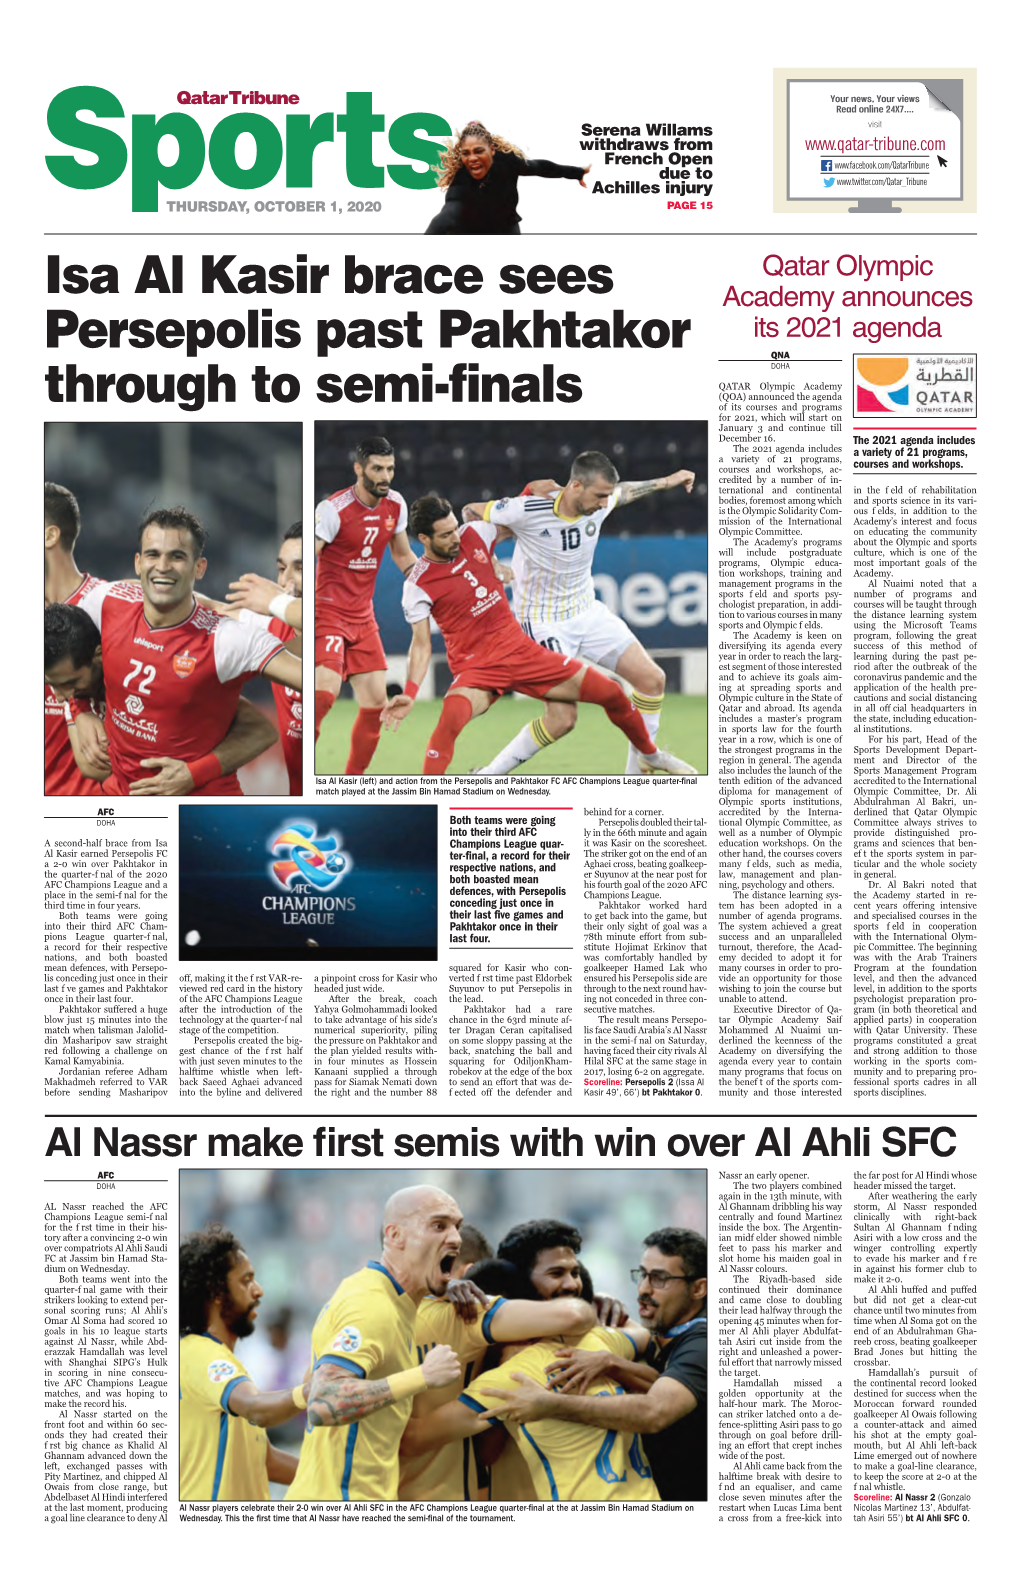 Isa Al Kasir Brace Sees Persepolis Past Pakhtakor Through to Semi-Finals